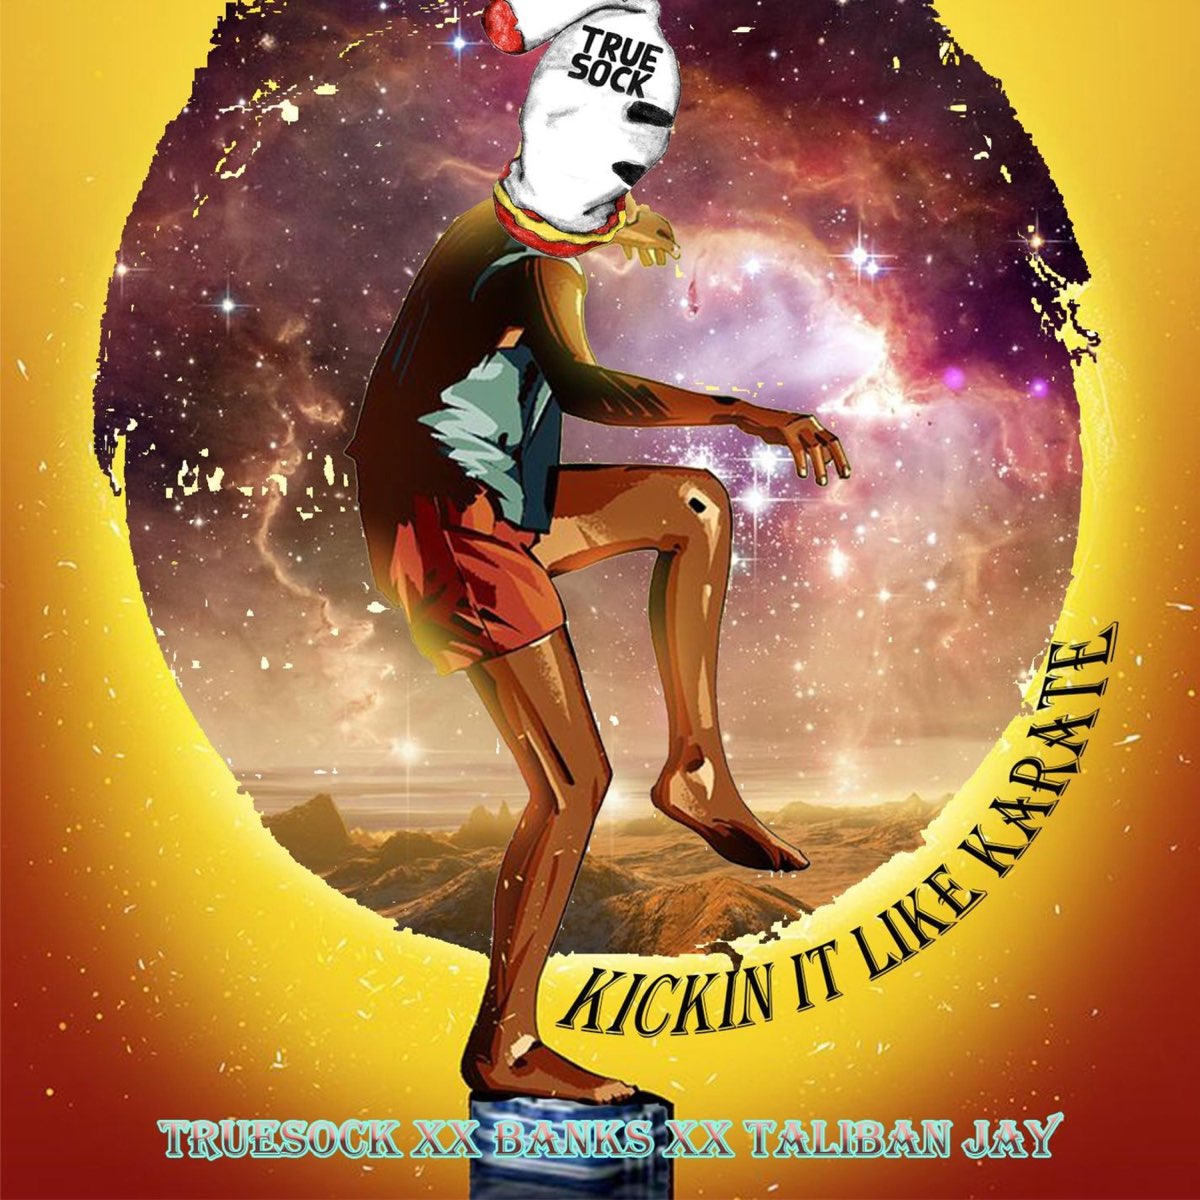 Kickin it Like Karate (feat. Taliban Jay & Banks) - Single by TrueSock on  Apple Music